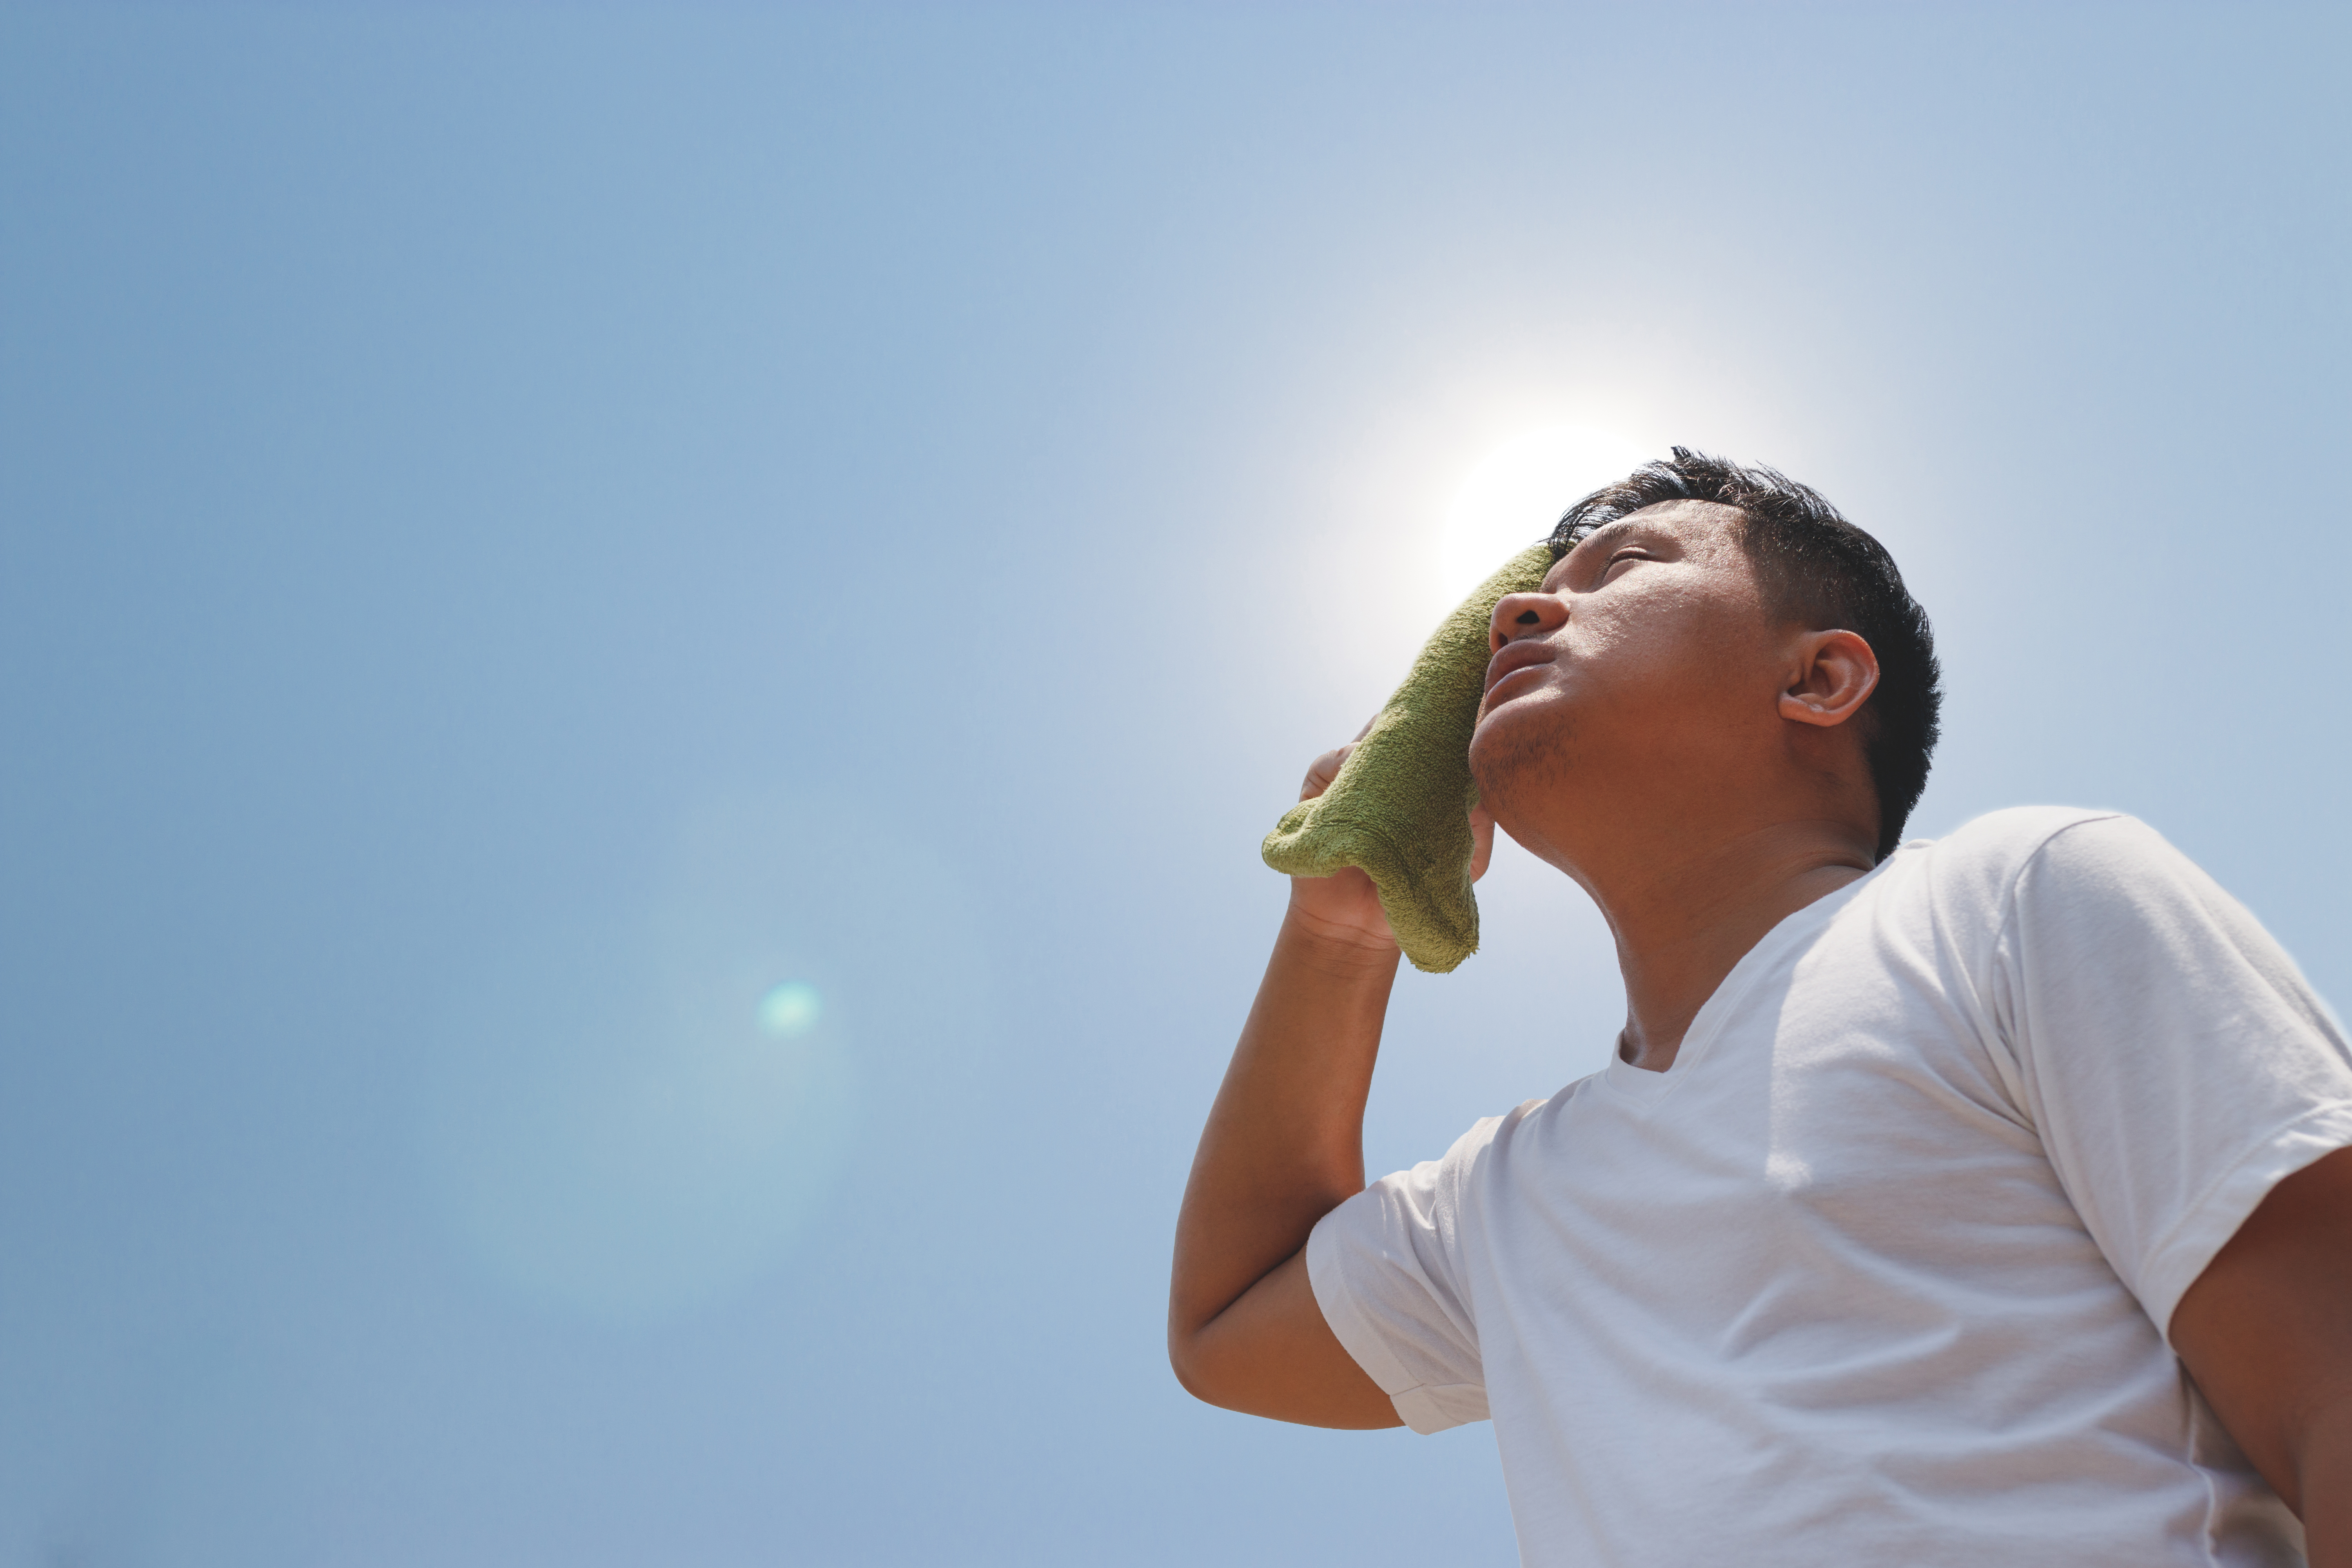 Utilizar camisa, bloqueador solar y sombrero son las recomendaciones del Ministerio de Salud. (Foto Prensa Libre: Shutterstock)